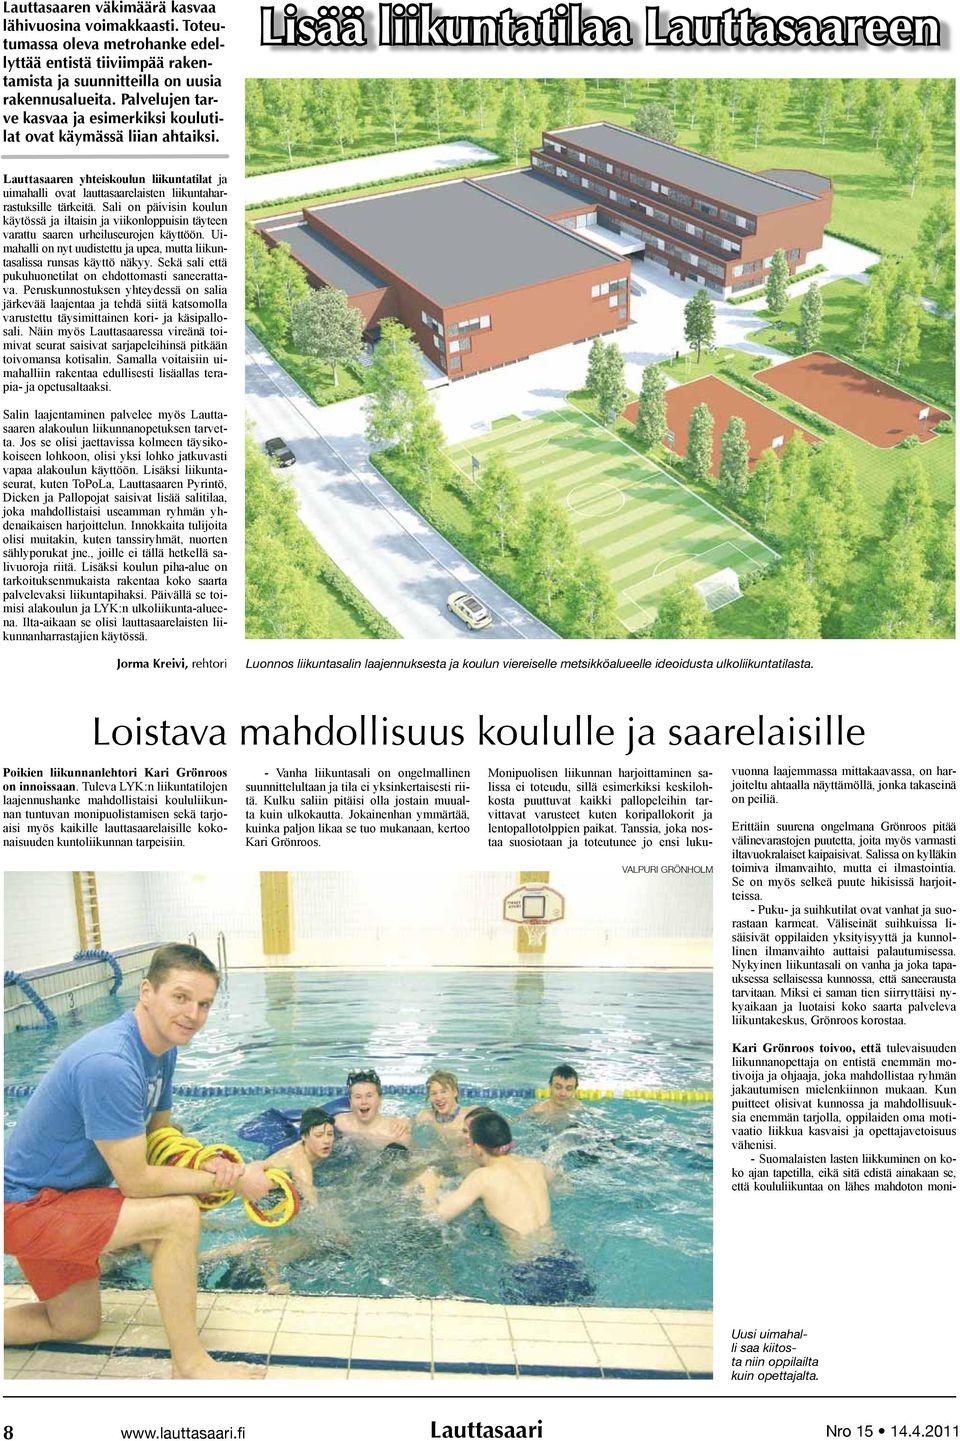 Lisää liikuntatilaa Lauttasaareen Lauttasaaren yhteiskoulun liikuntatilat ja uimahalli ovat lauttasaarelaisten liikuntaharrastuksille tärkeitä.